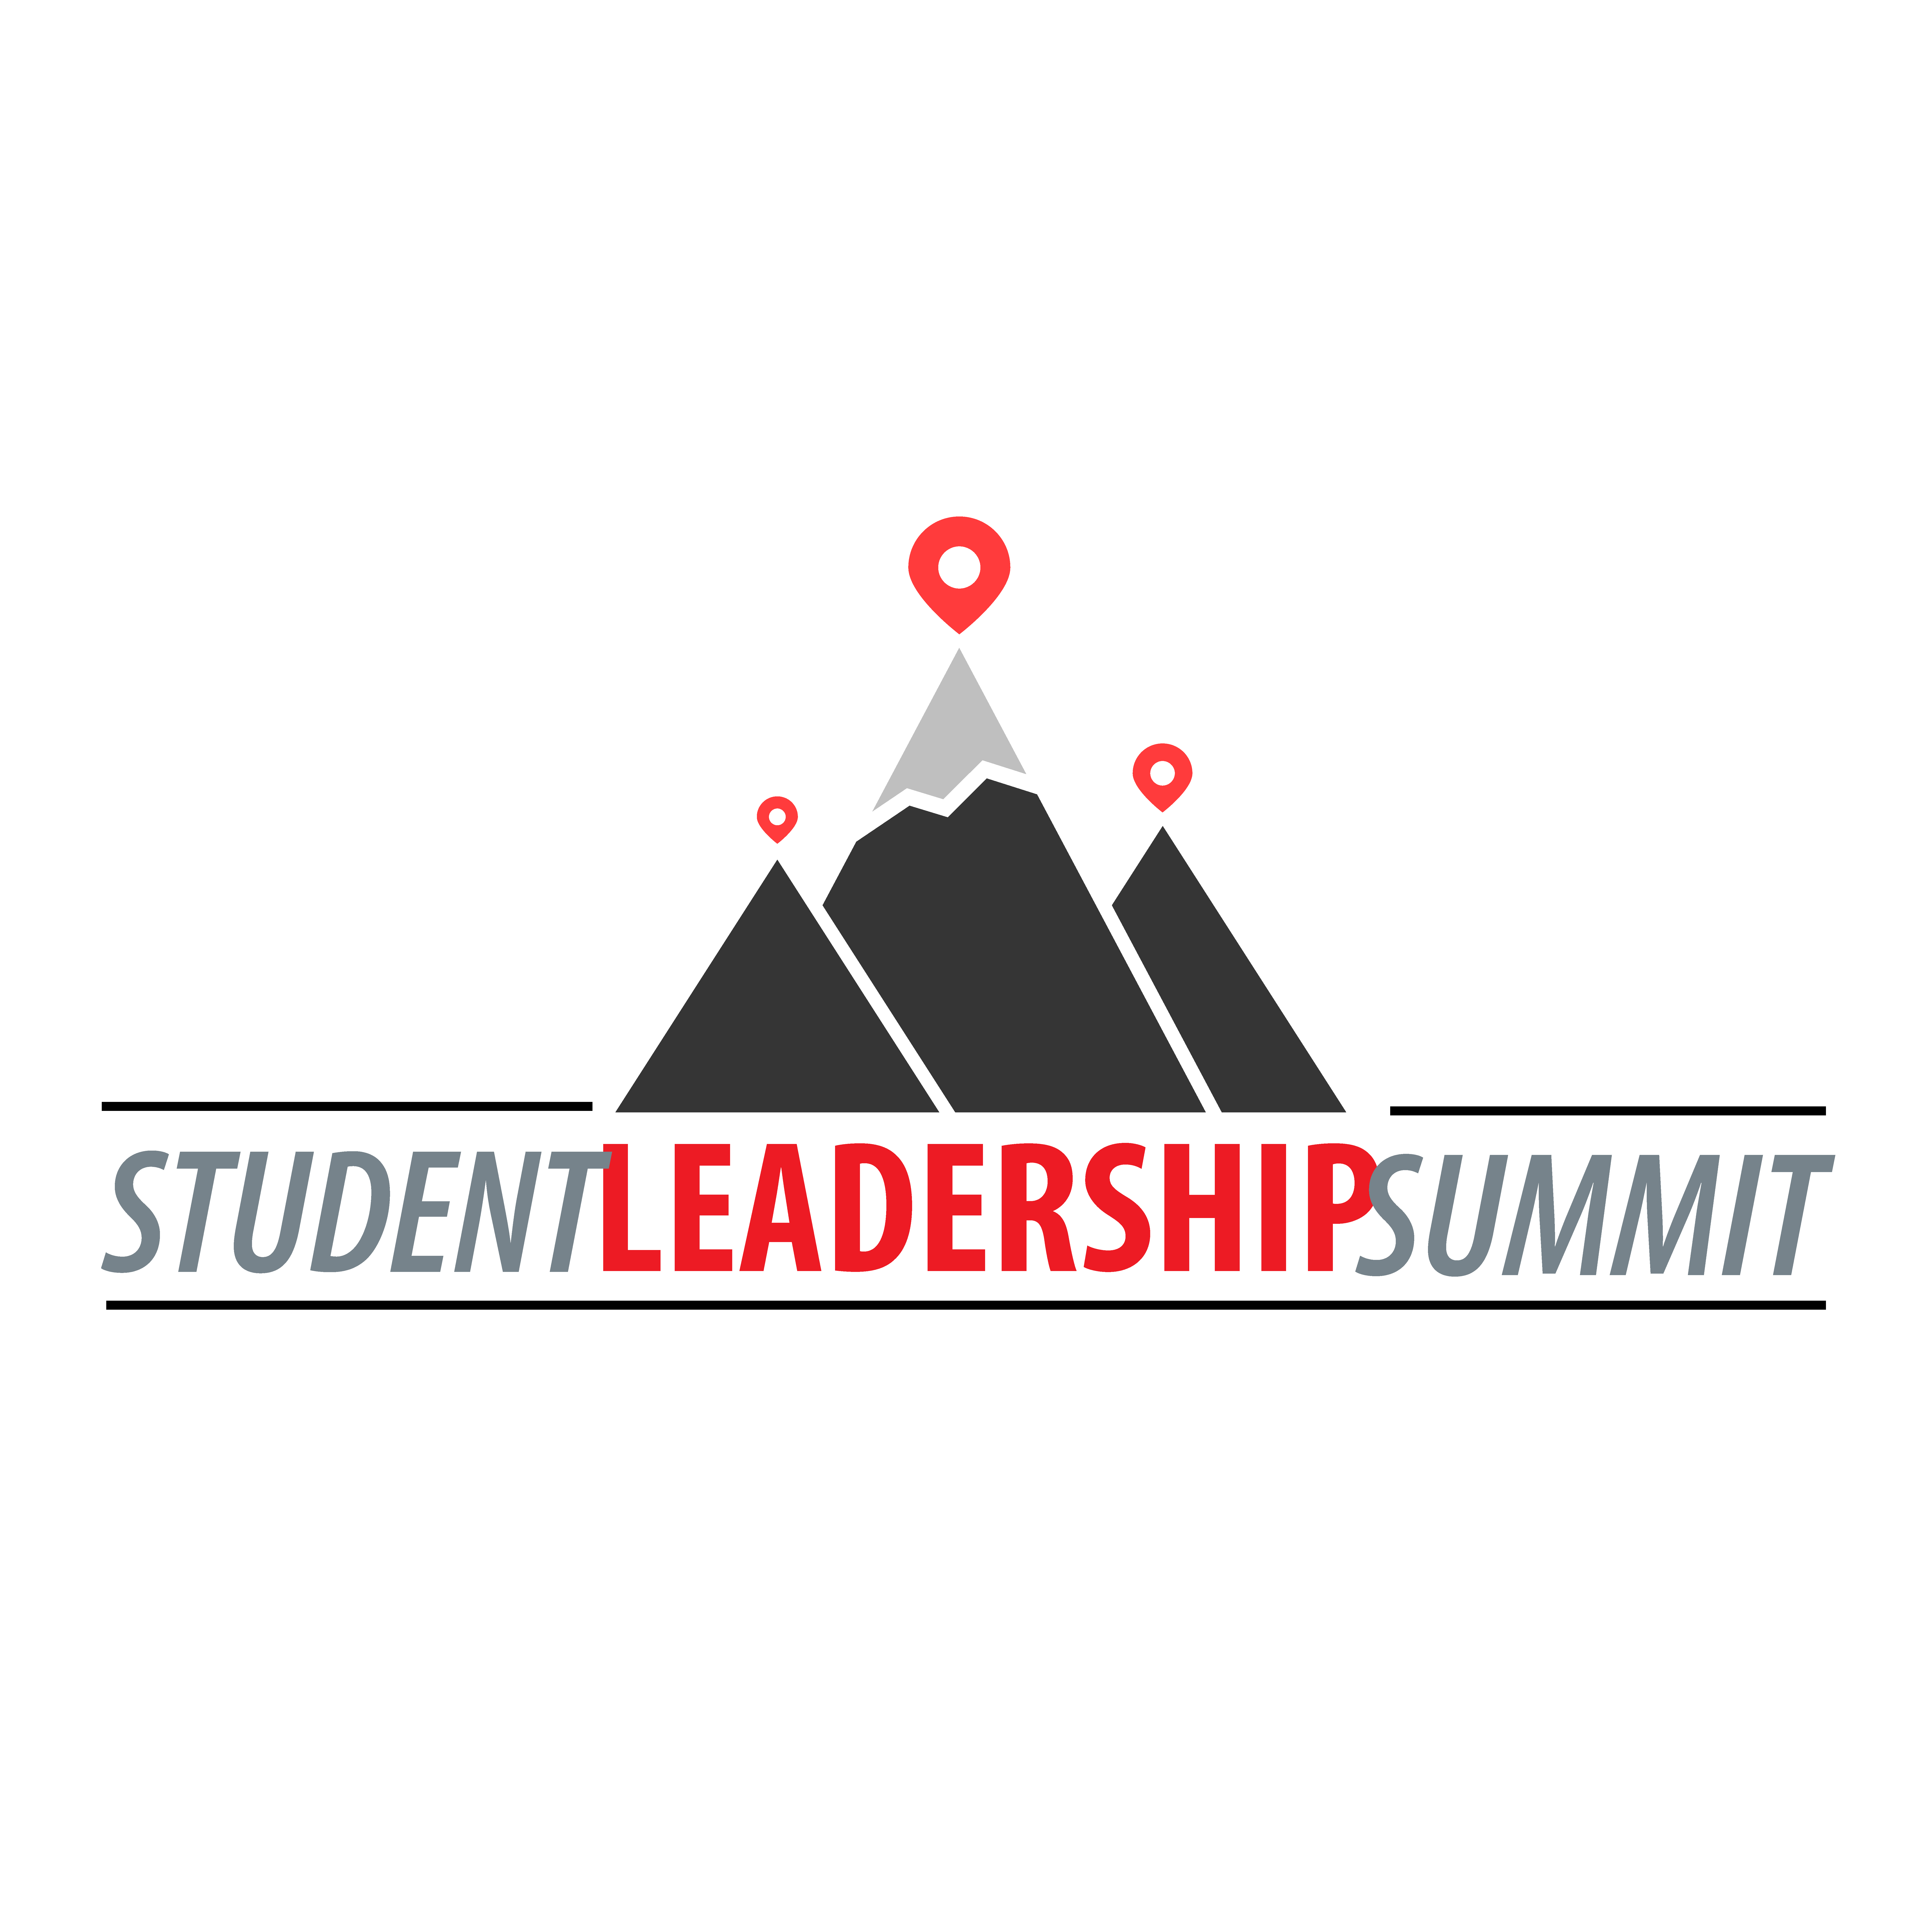 Student Leadership Summit on Nov. 22